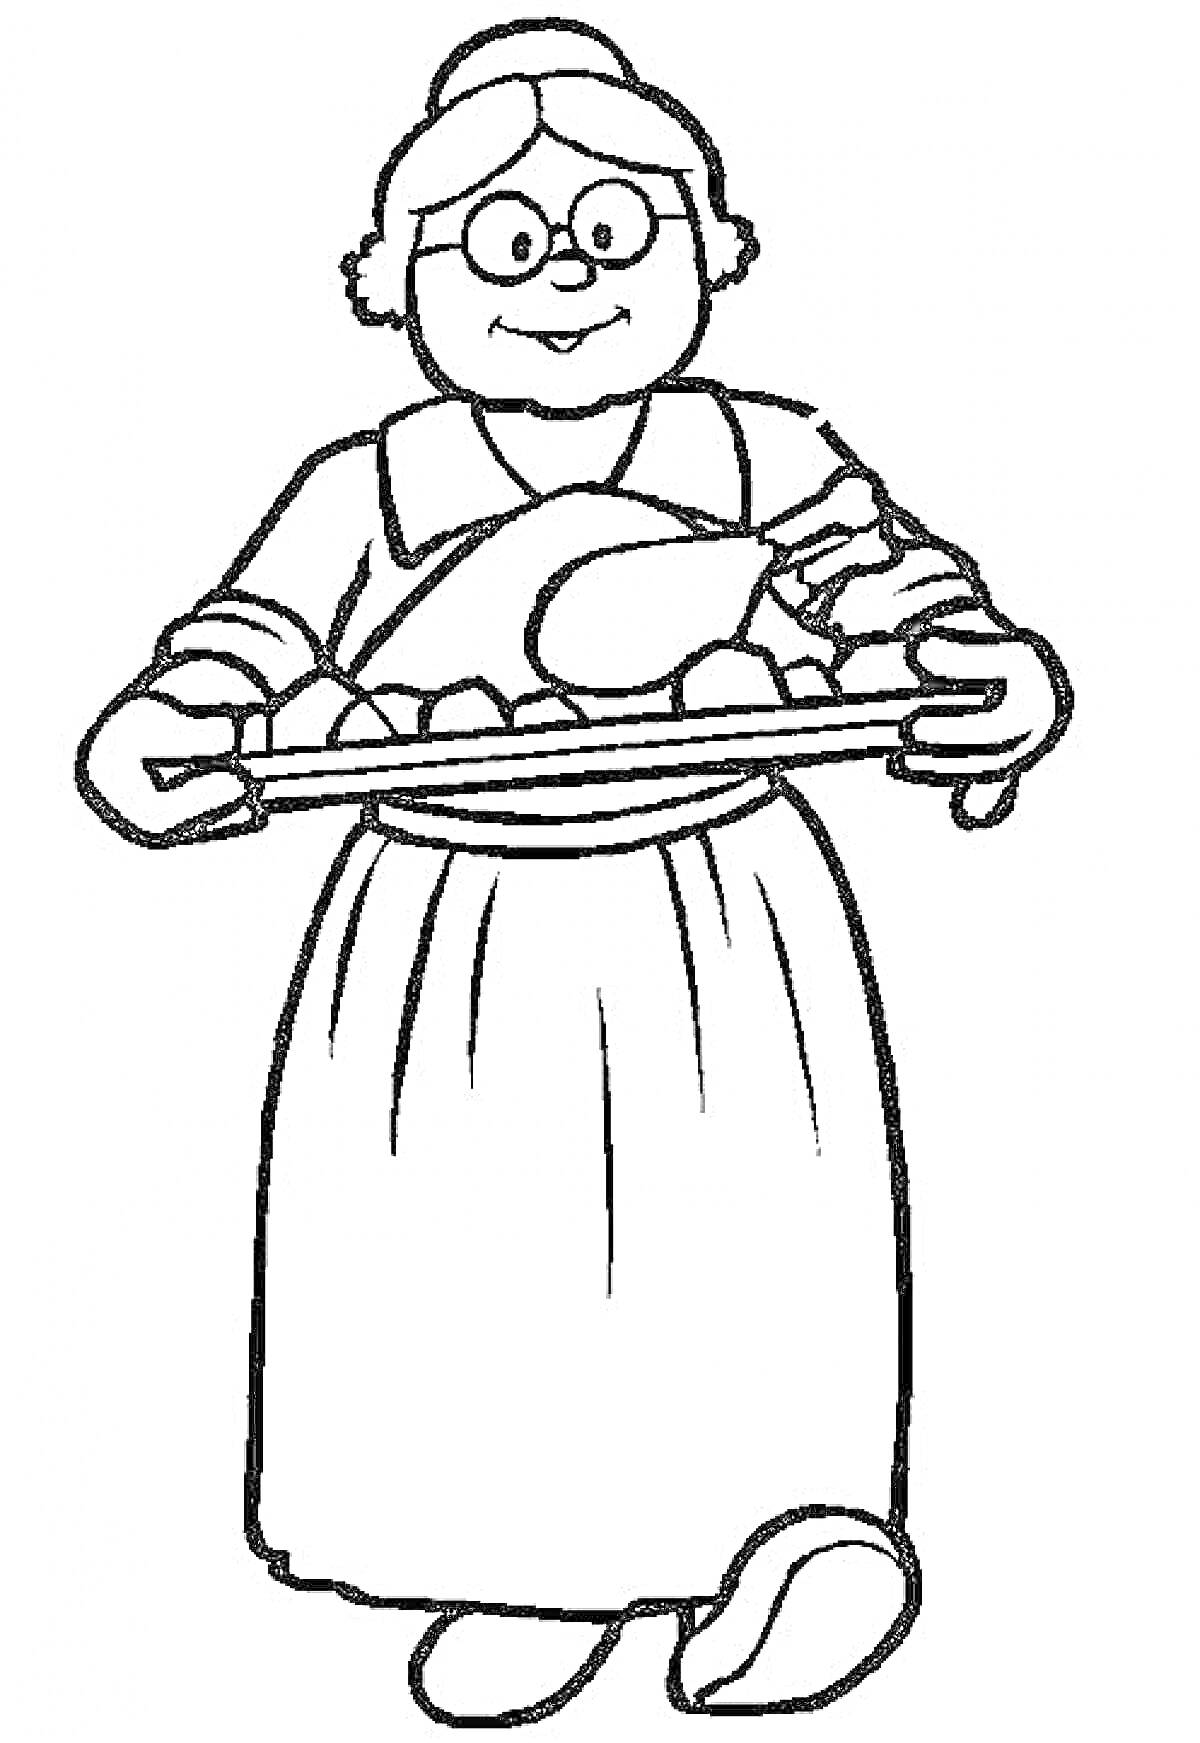 Бабушка с очками в платье и фартуке, держит поднос с приготовленной курицей и овощами